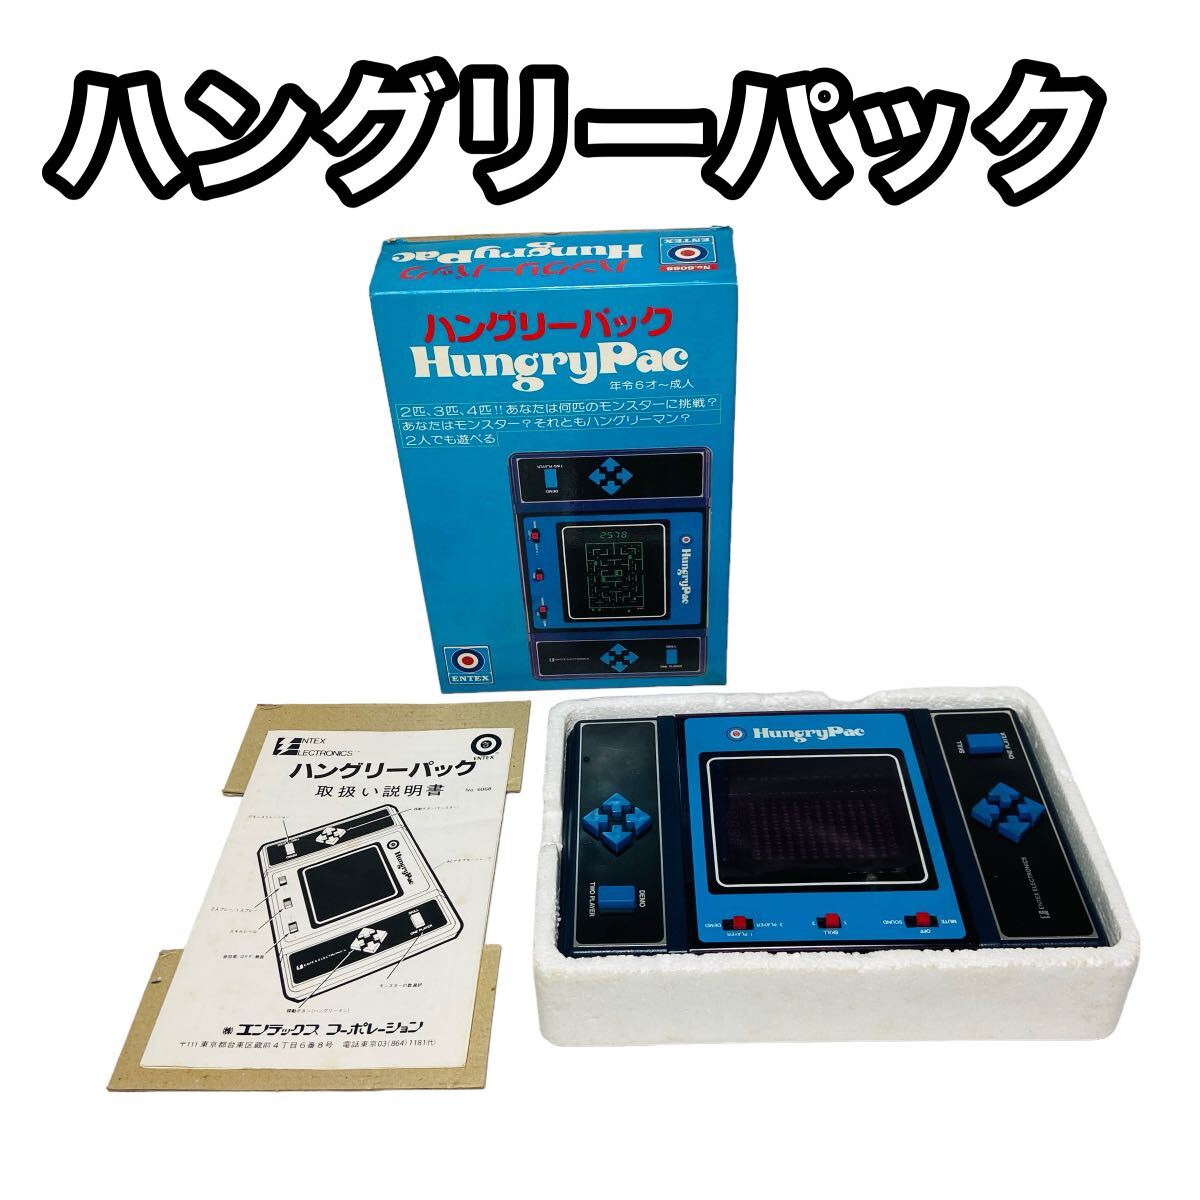 【希少動作品】ENTEX ハングリーパック LSIゲーム hungryPac 外箱・取扱説明書付きの画像1